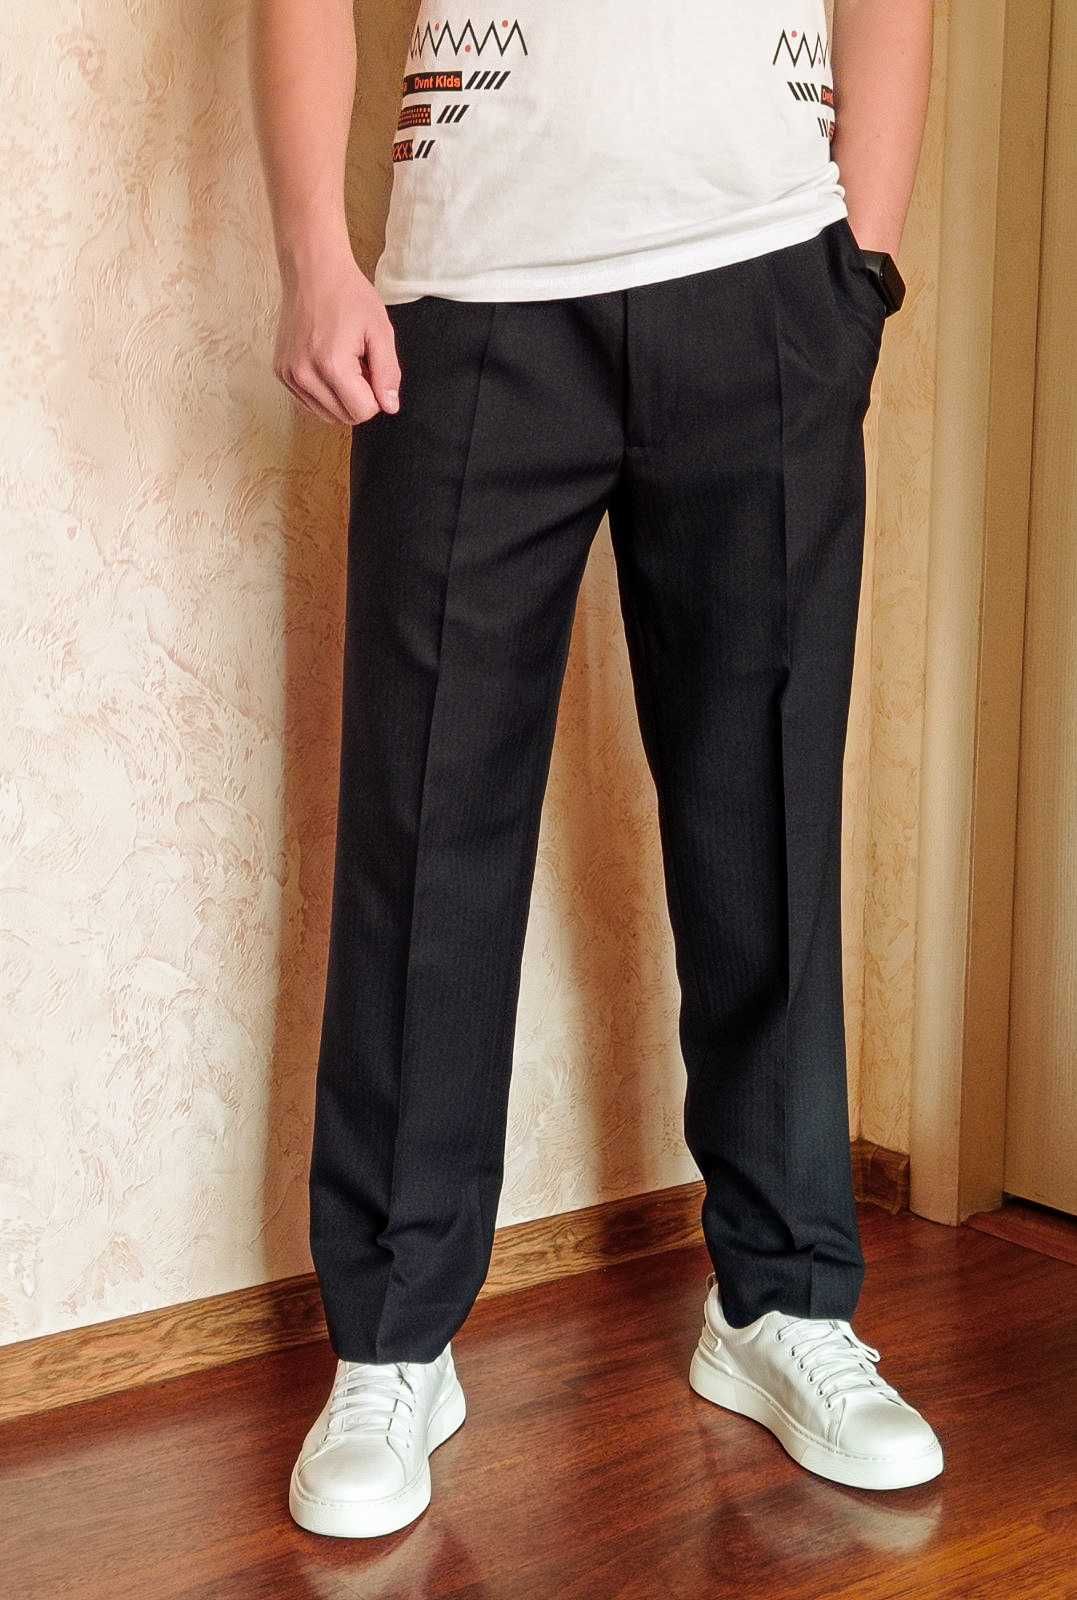 Класичні брюки для хлопчика-підлітка ( 32р )